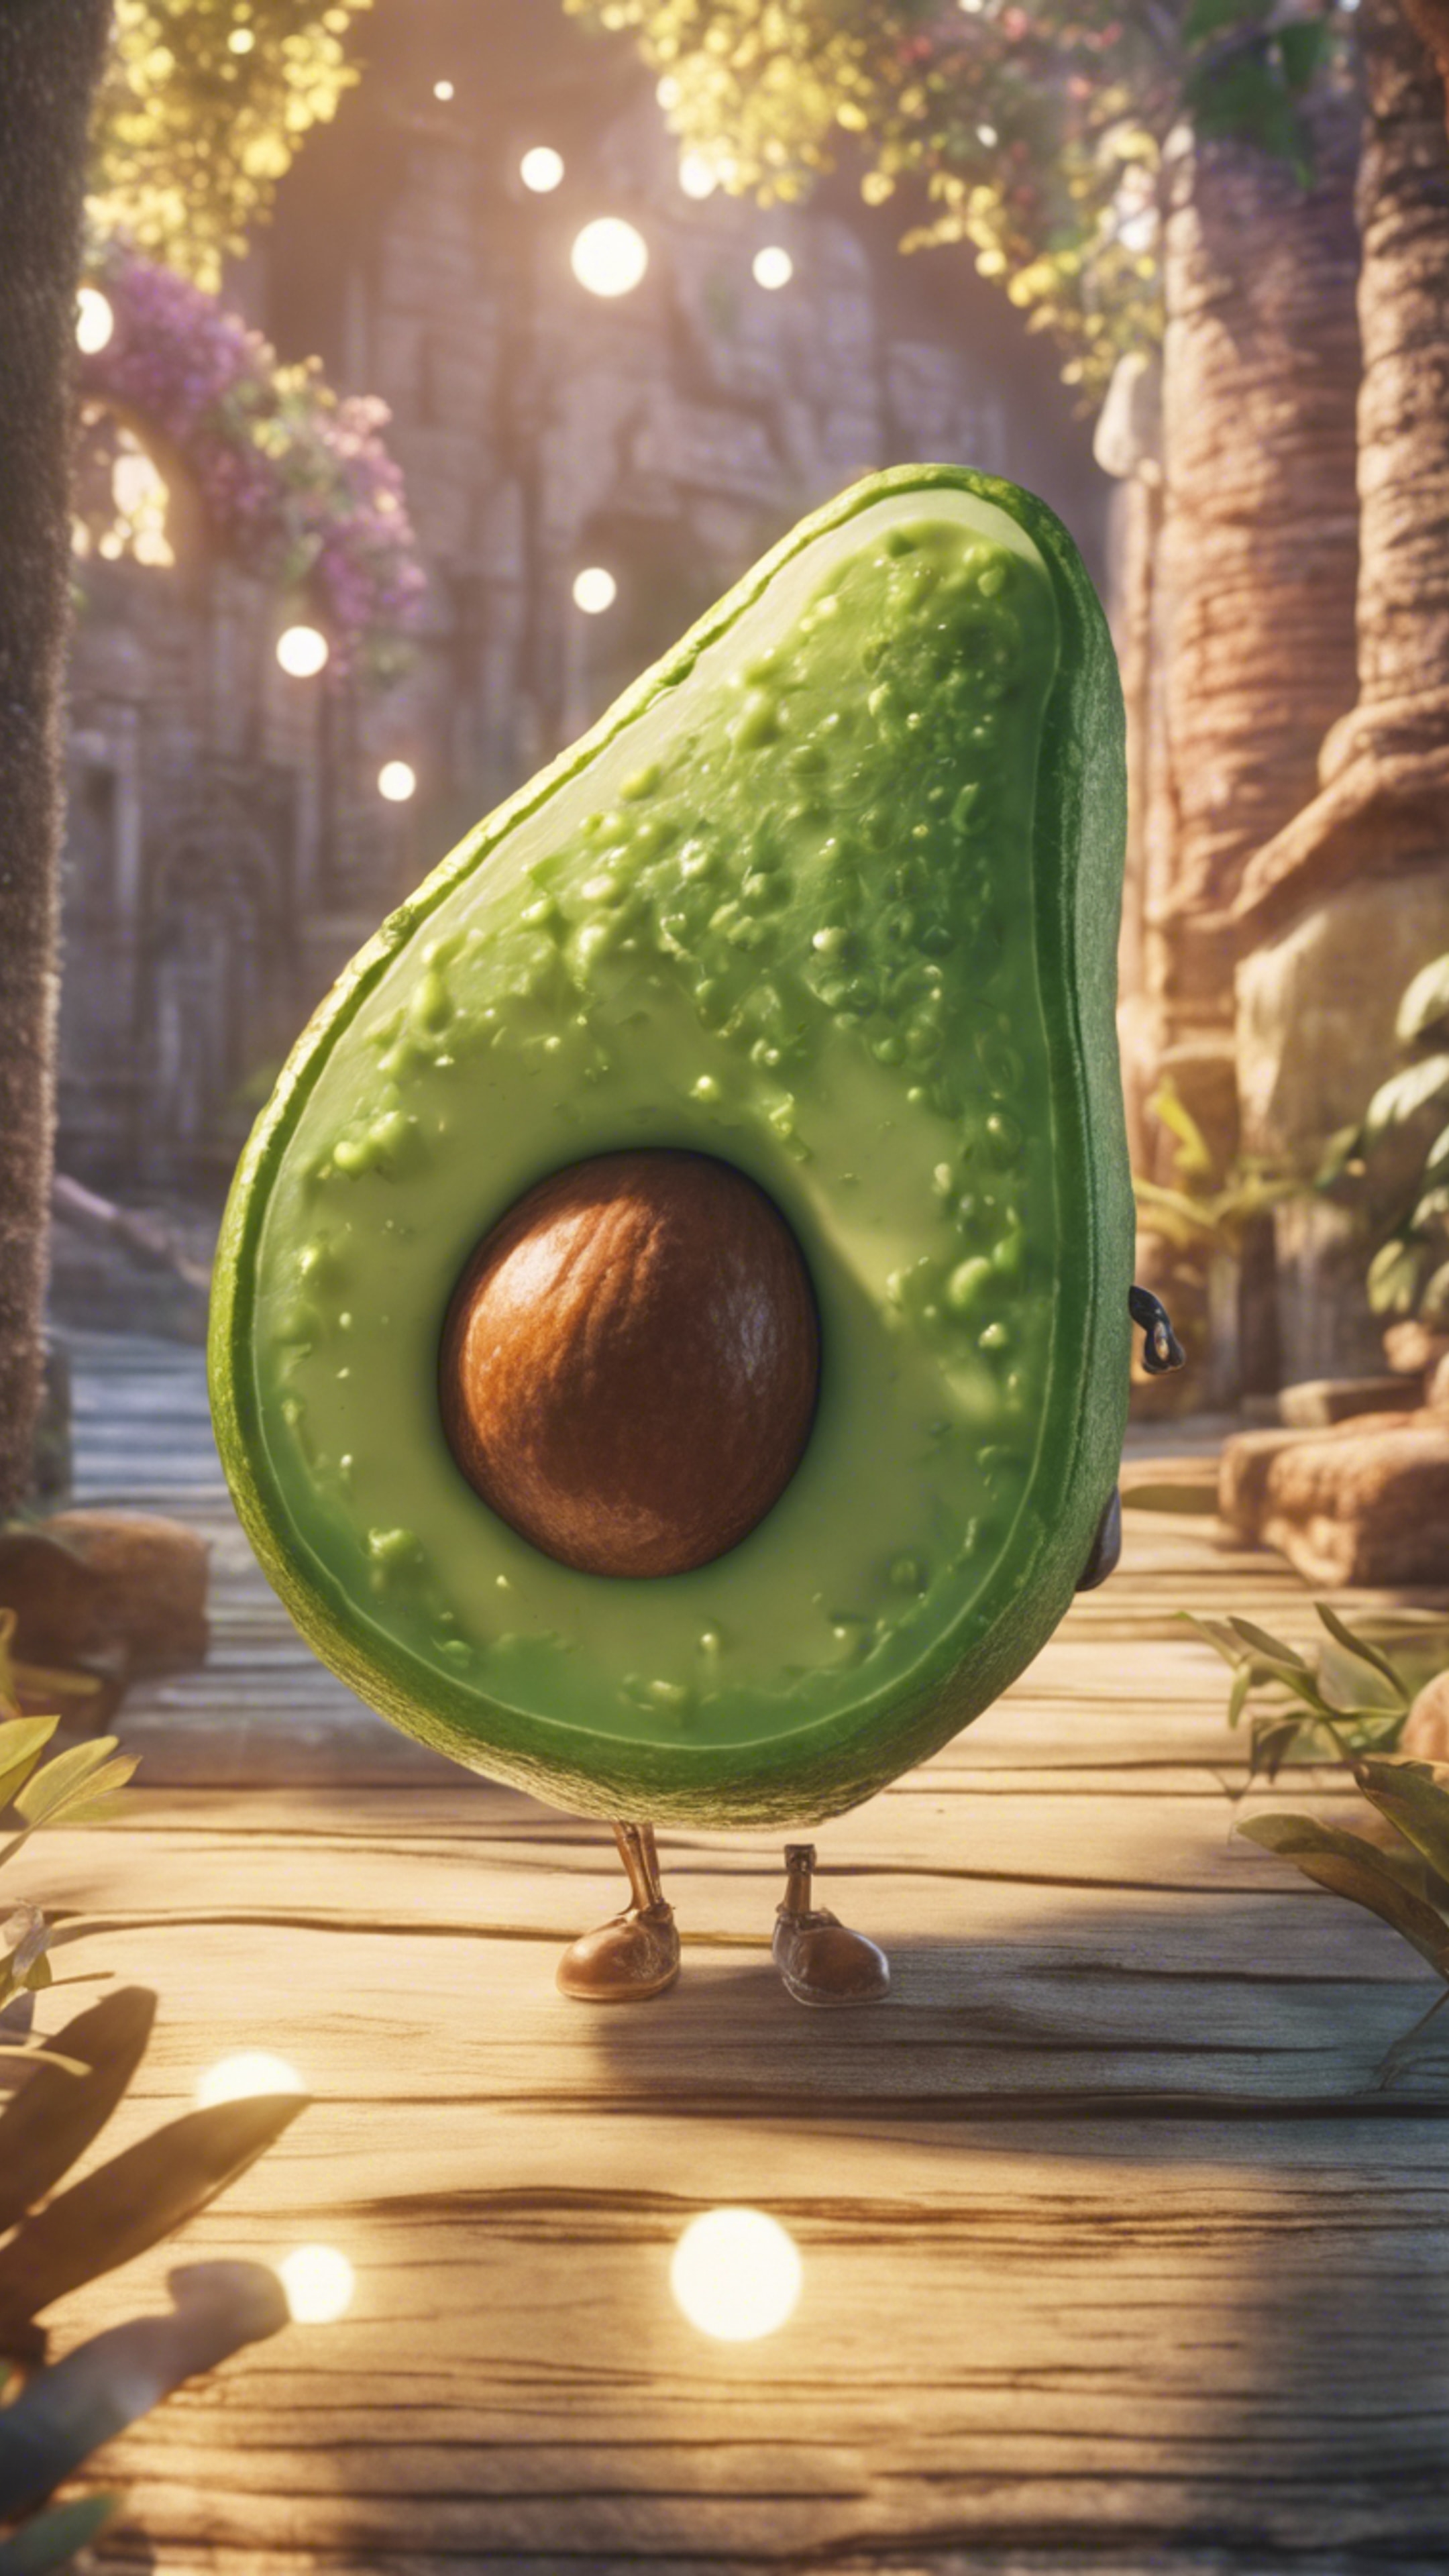 A manga-style scene of an avocado on a magical journey Divar kağızı[452ab1c8ad254f0b95e7]